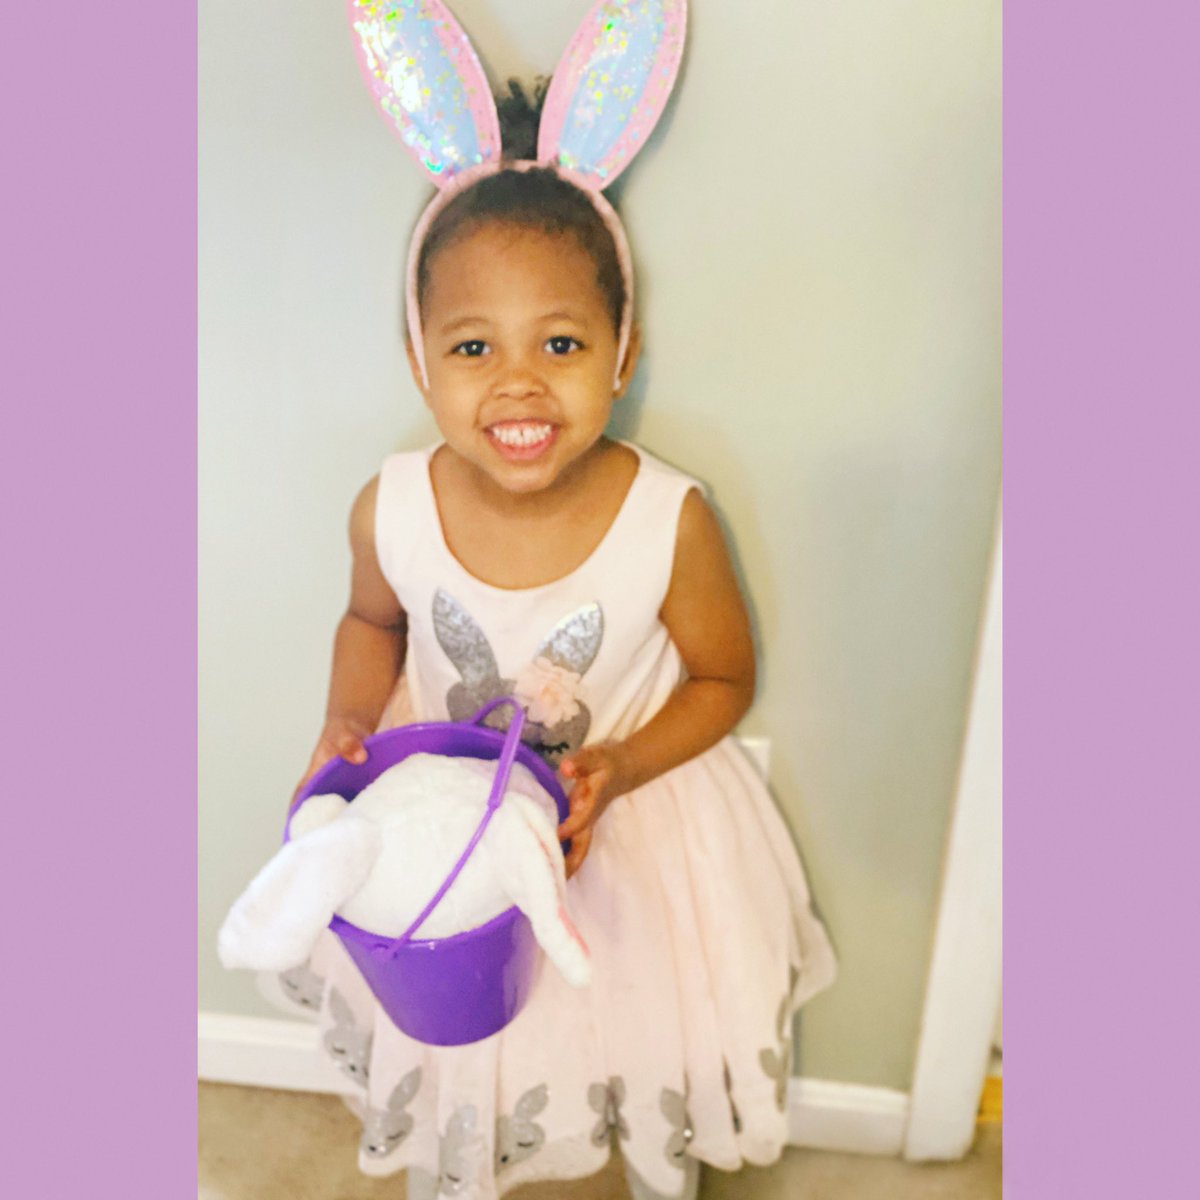 My sweet Easter Bunny! 🐰💜
.
.
#bringingJOYtoall
#FOUReveramazing
#WhitleyJanelle